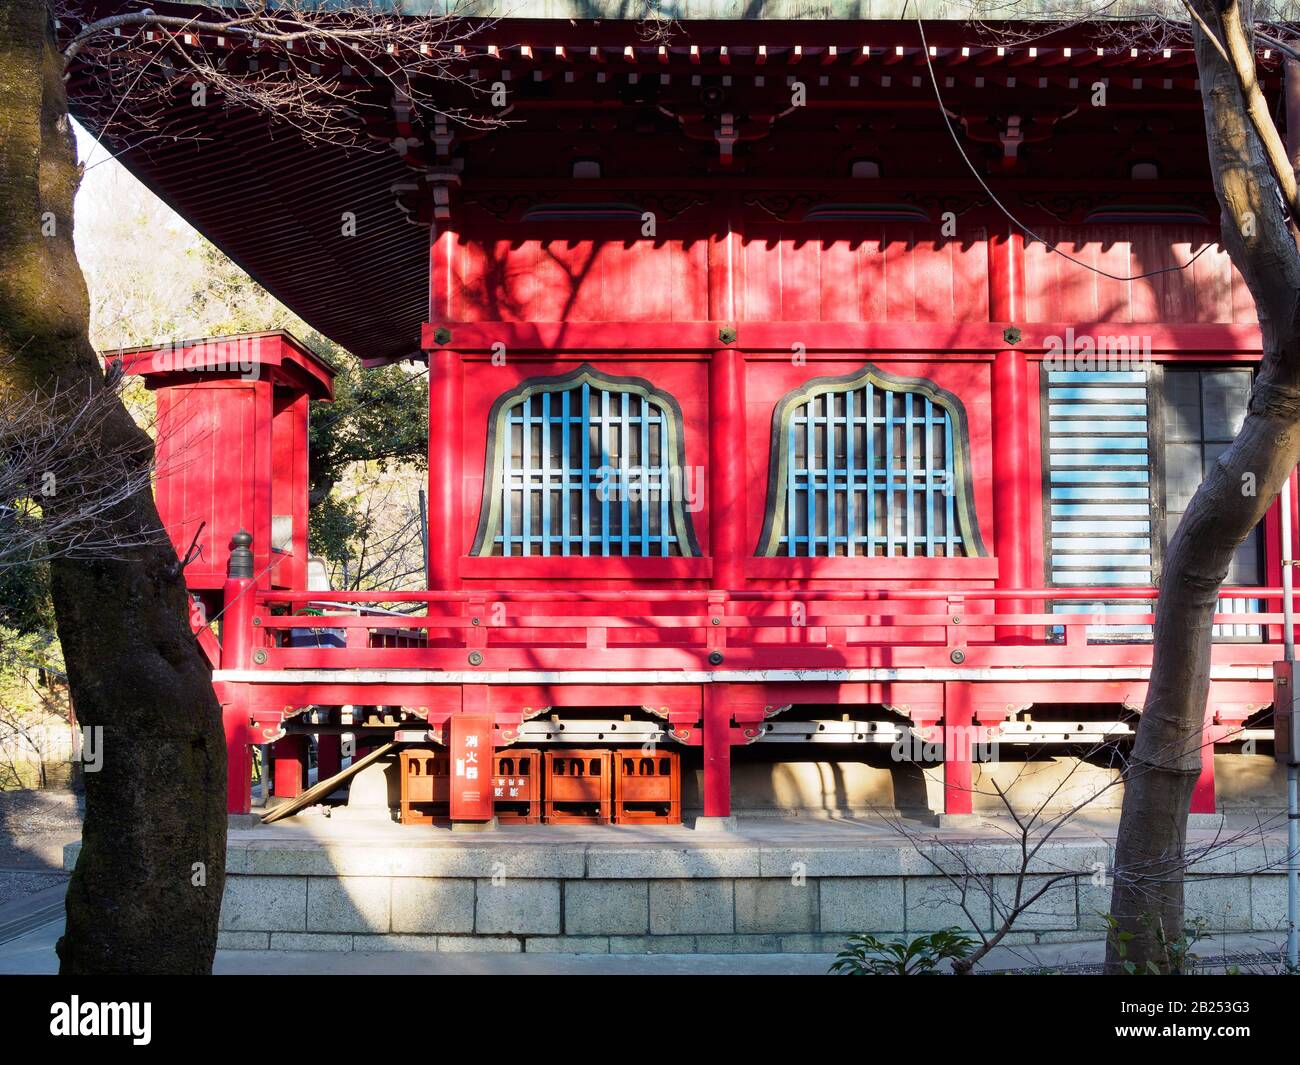 Inokashira Benzaiten buddhist temple in Kichijoji, Tokyo, Japan. Stock Photo